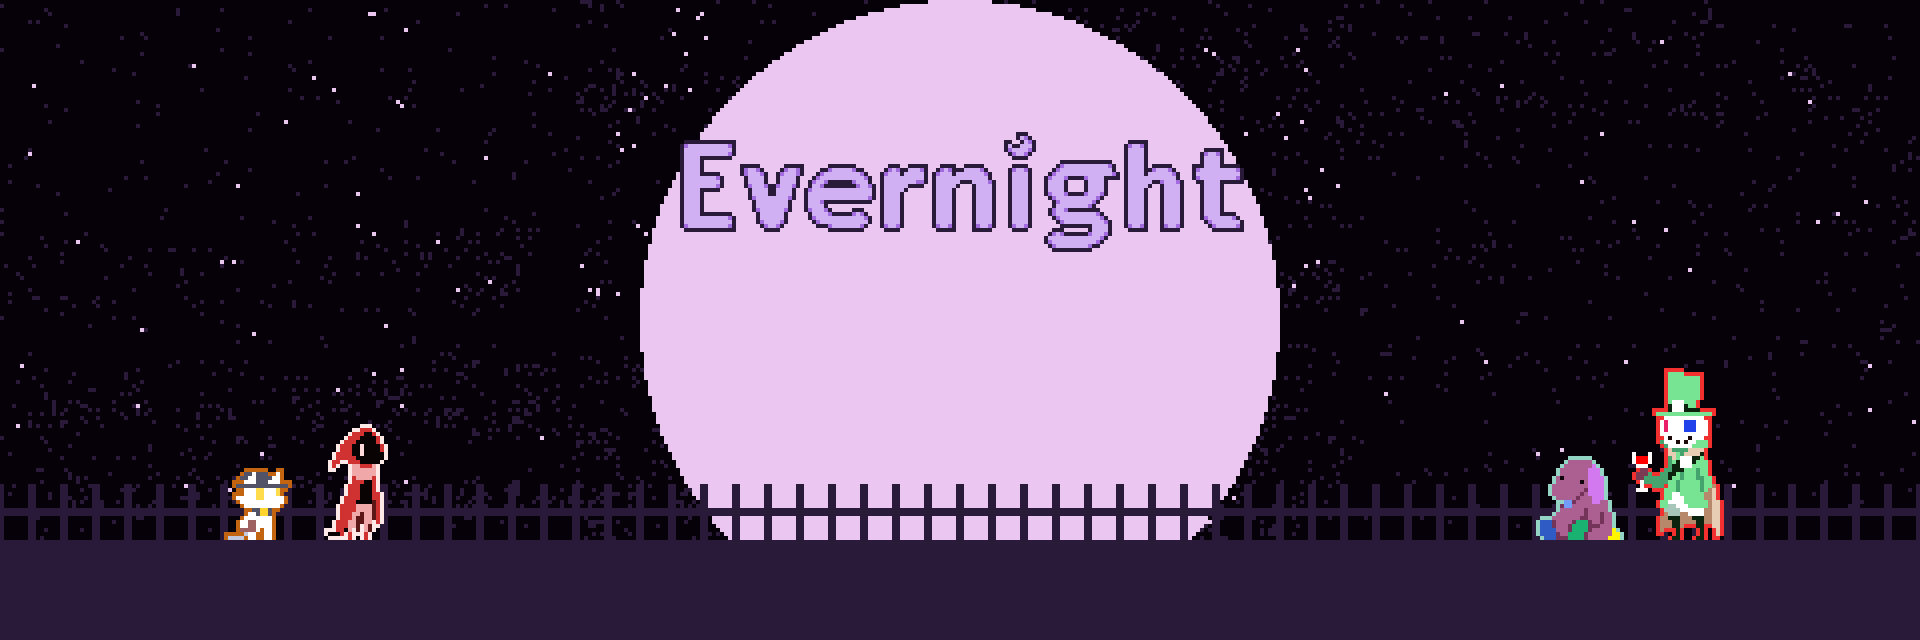 Evernight